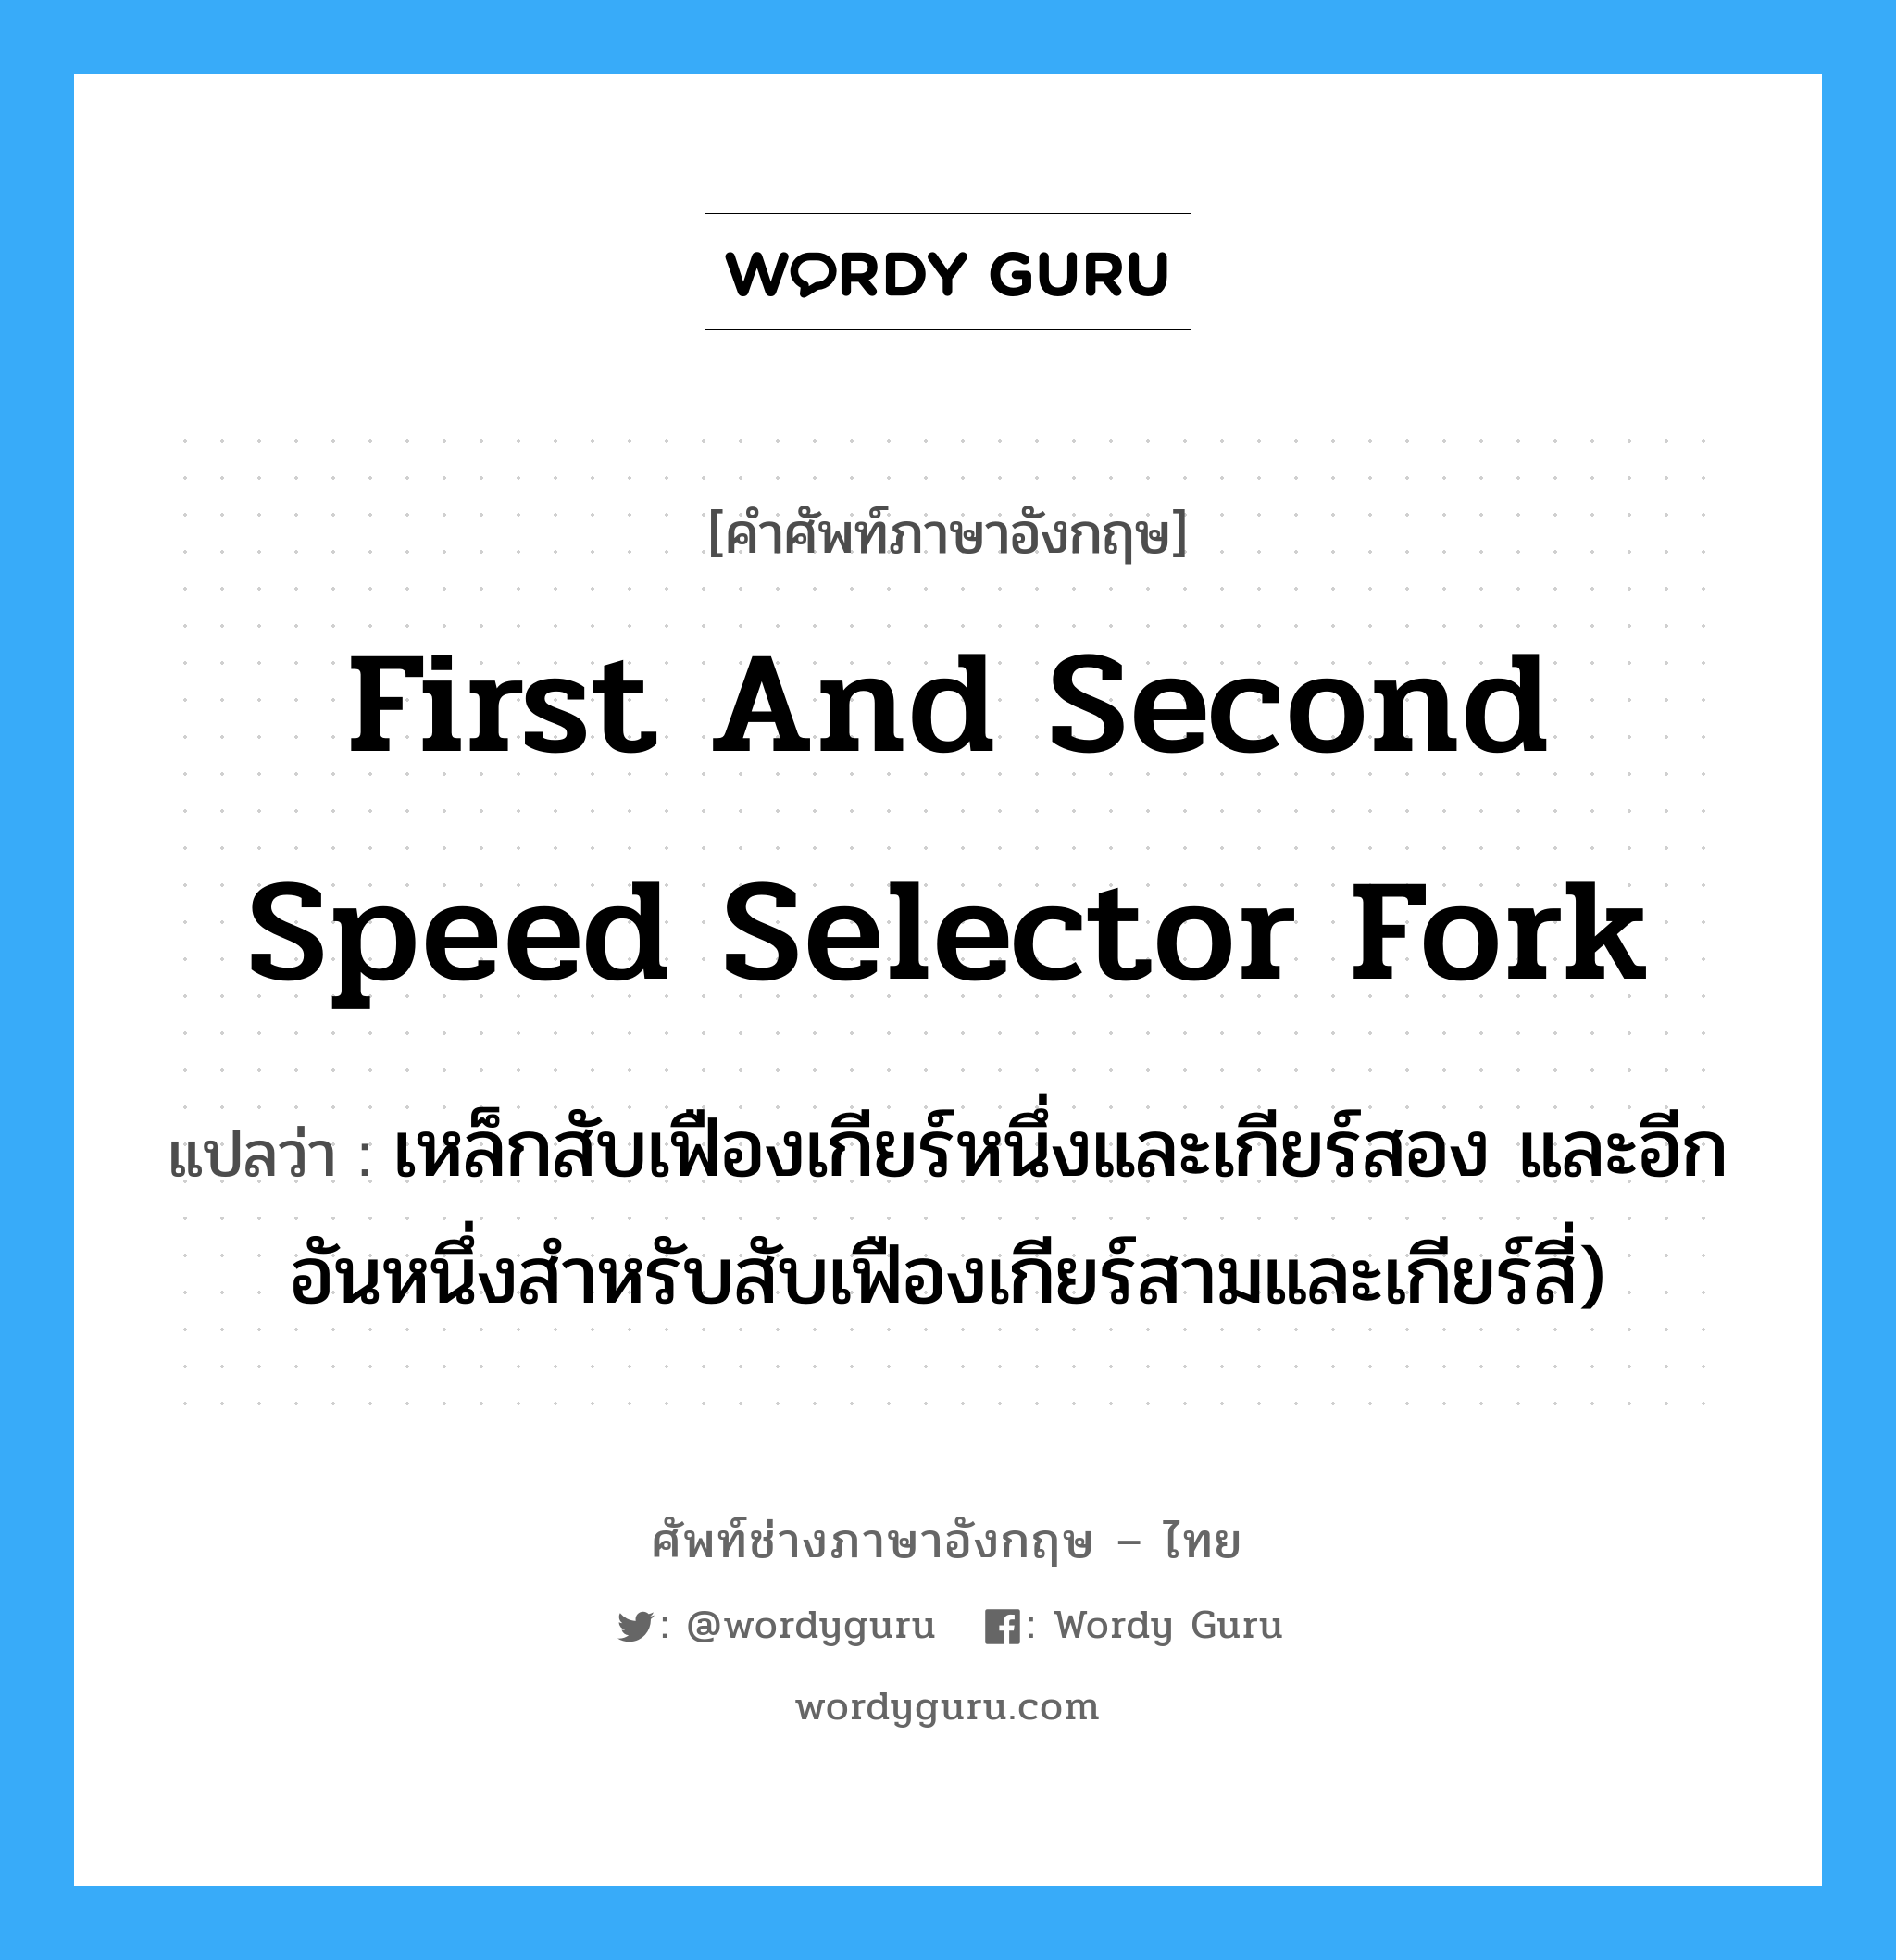 first and second speed selector fork แปลว่า?, คำศัพท์ช่างภาษาอังกฤษ - ไทย first and second speed selector fork คำศัพท์ภาษาอังกฤษ first and second speed selector fork แปลว่า เหล็กสับเฟืองเกียร์หนึ่งและเกียร์สอง และอีกอันหนึ่งสำหรับสับเฟืองเกียร์สามและเกียร์สี่)